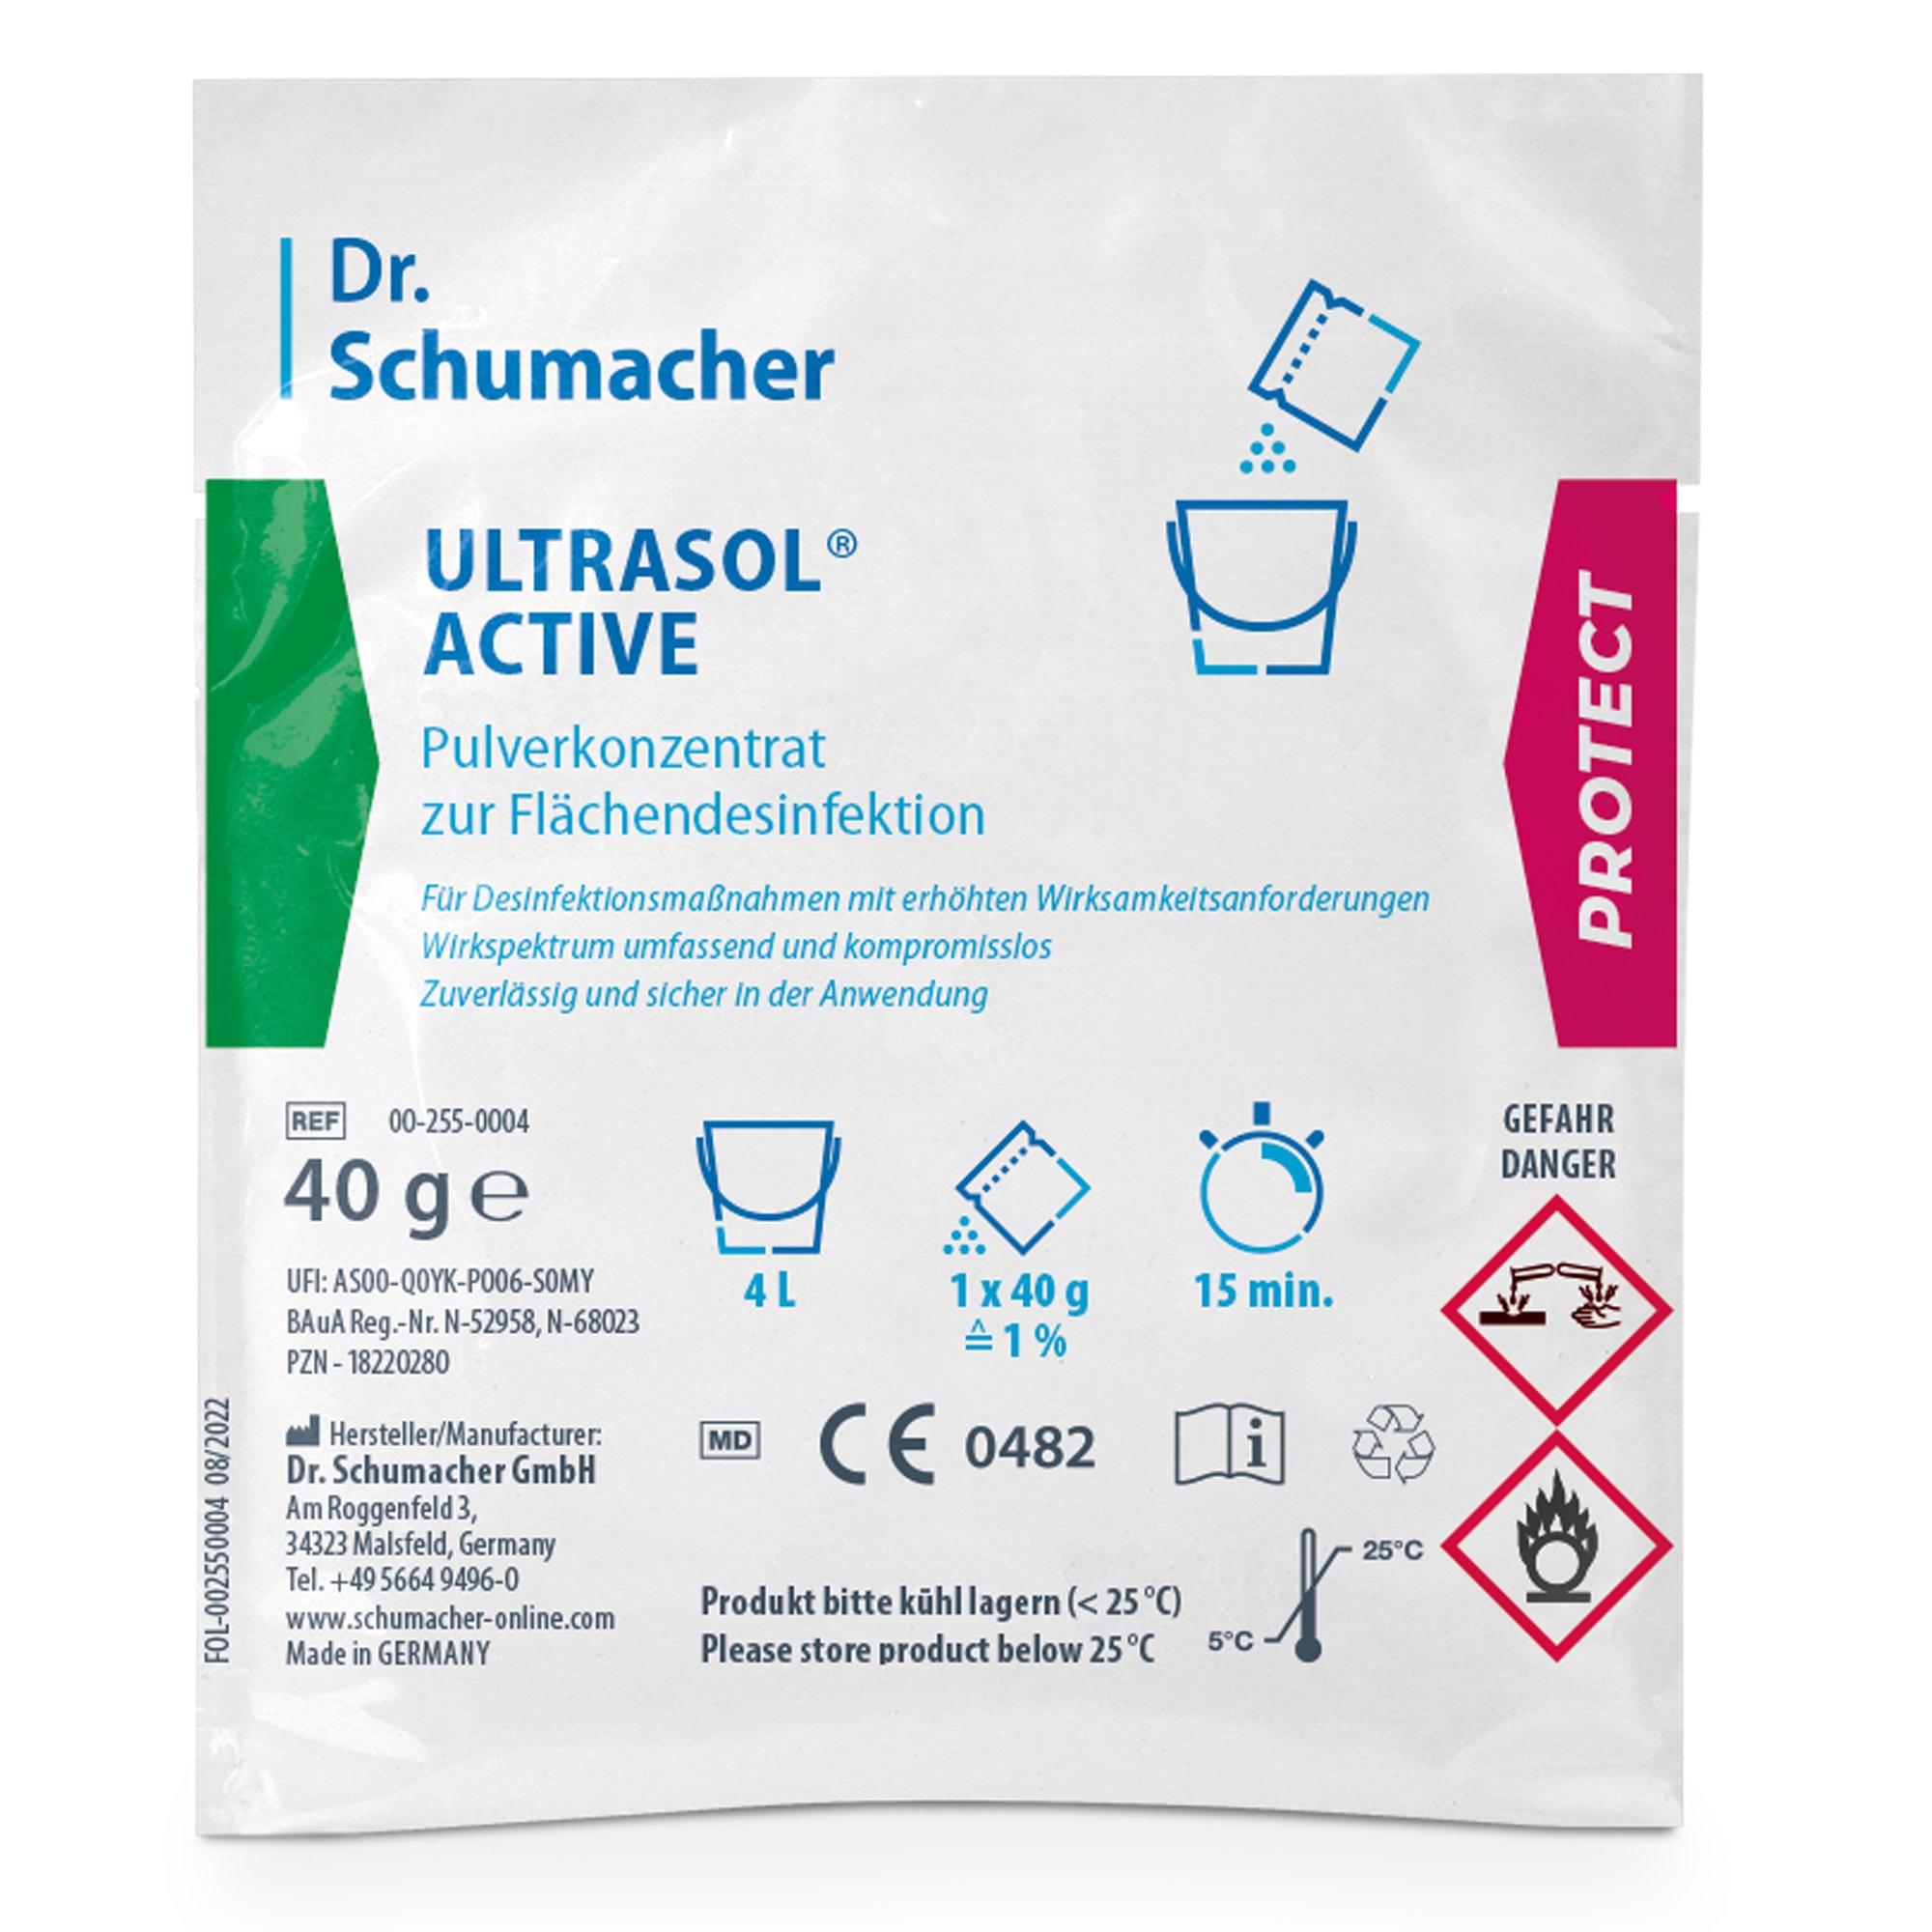 Dr. Schumacher Ultrasol active Pulverkonzentrat zur Flächendesinfektion